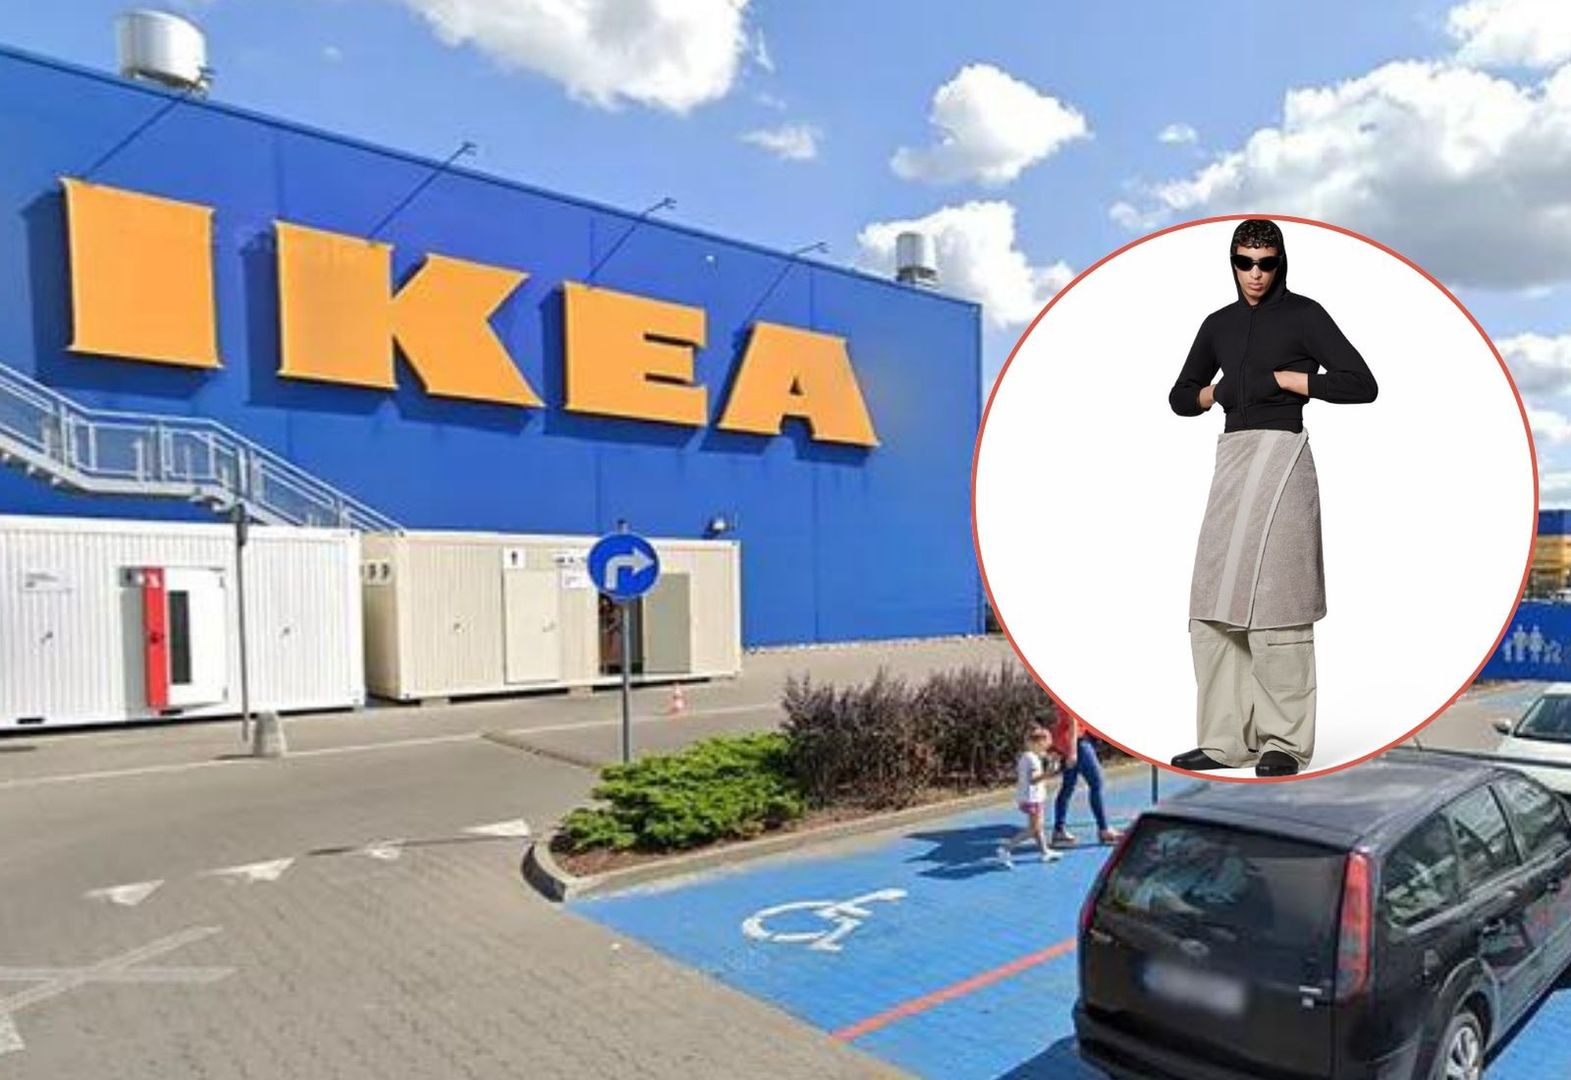 Balenciaga sprzedaje spódnicę z ręcznika za ponad 3 tys. zł. IKEA odpowiada